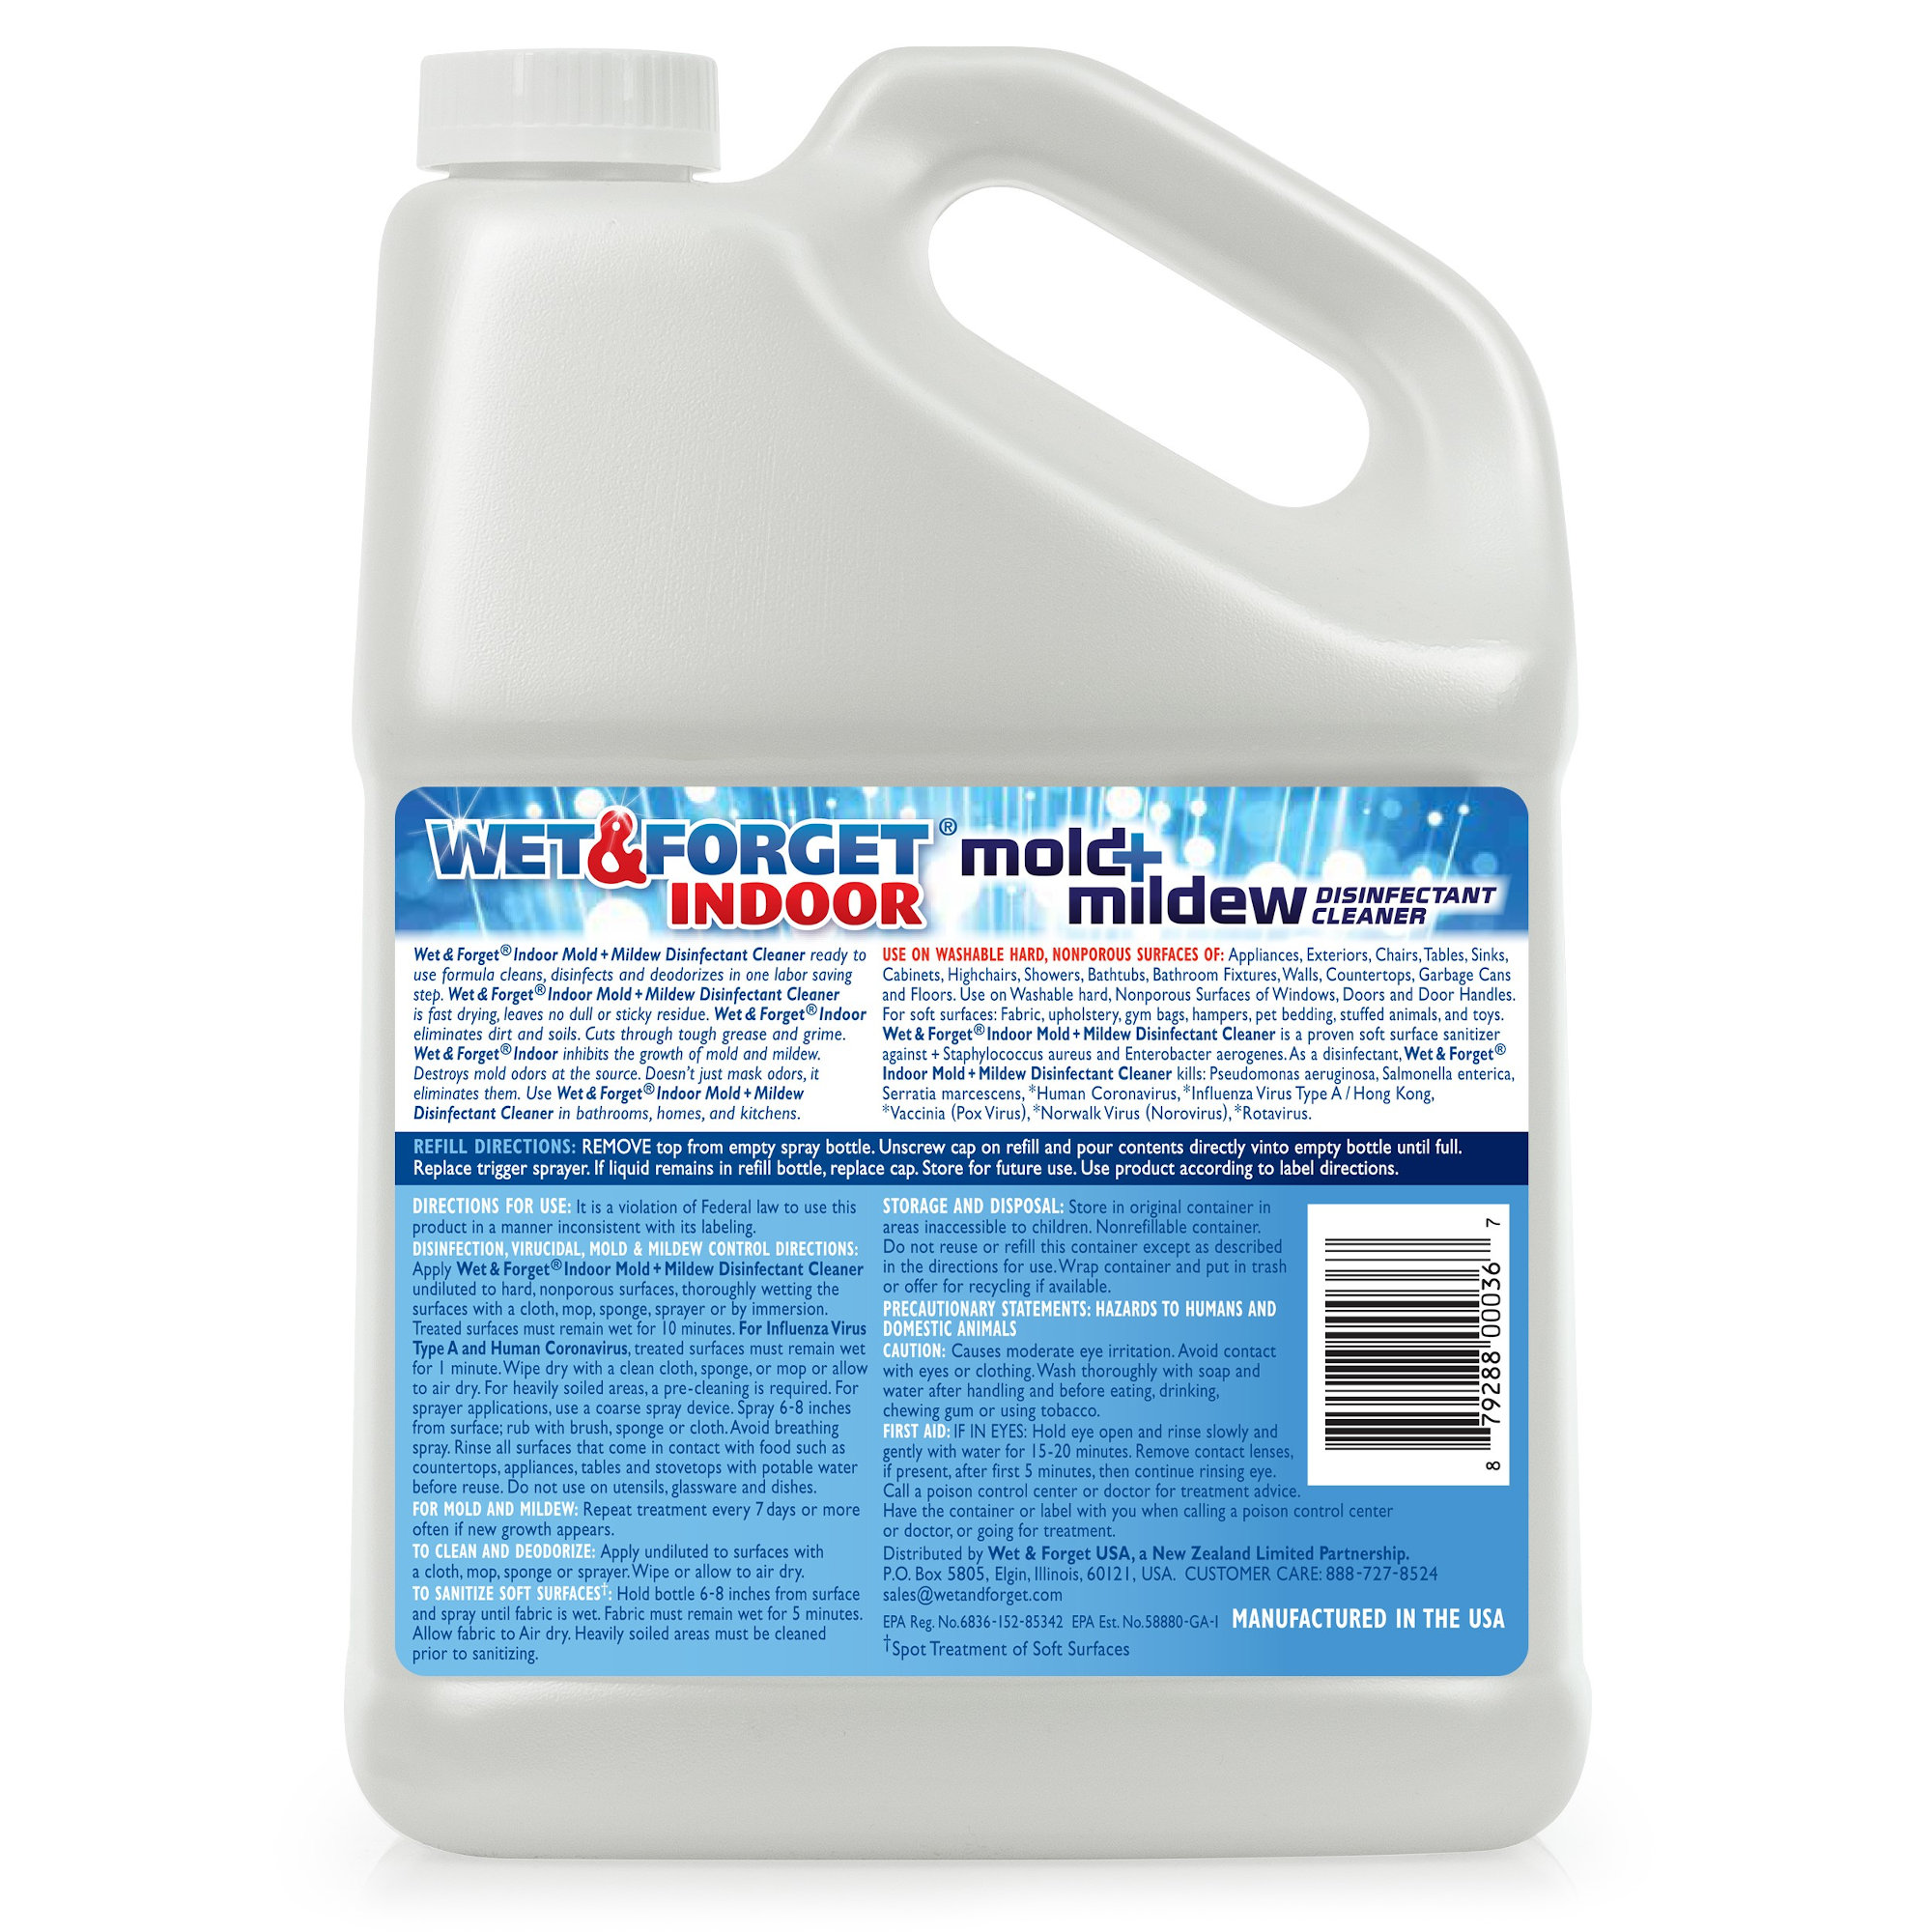 Wet & Forget Indoor Mold Mildew Disinfectant Cleaner